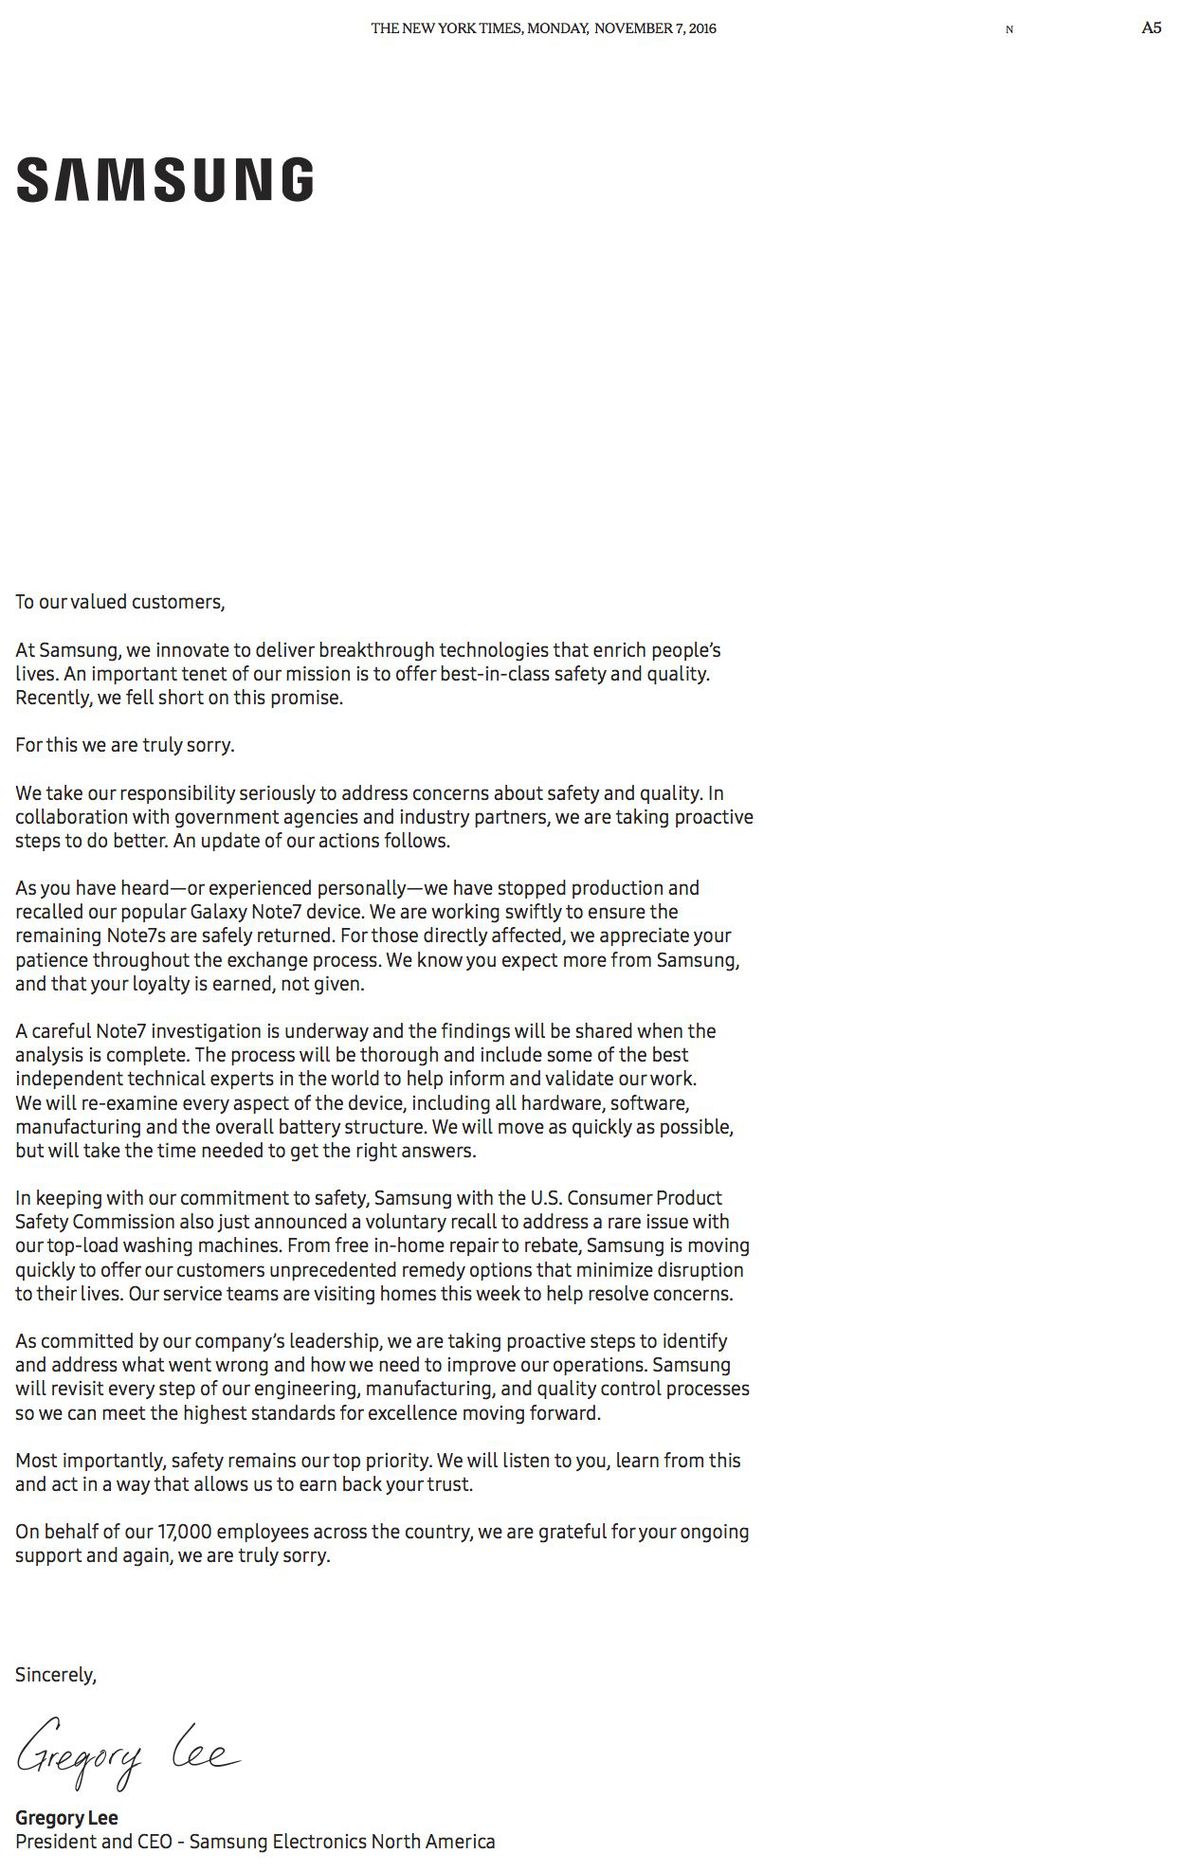 سامسونغ تنشر إعتذارا رسميّا على صفحات كبرى الجرائد الأمريكيّة بشأن